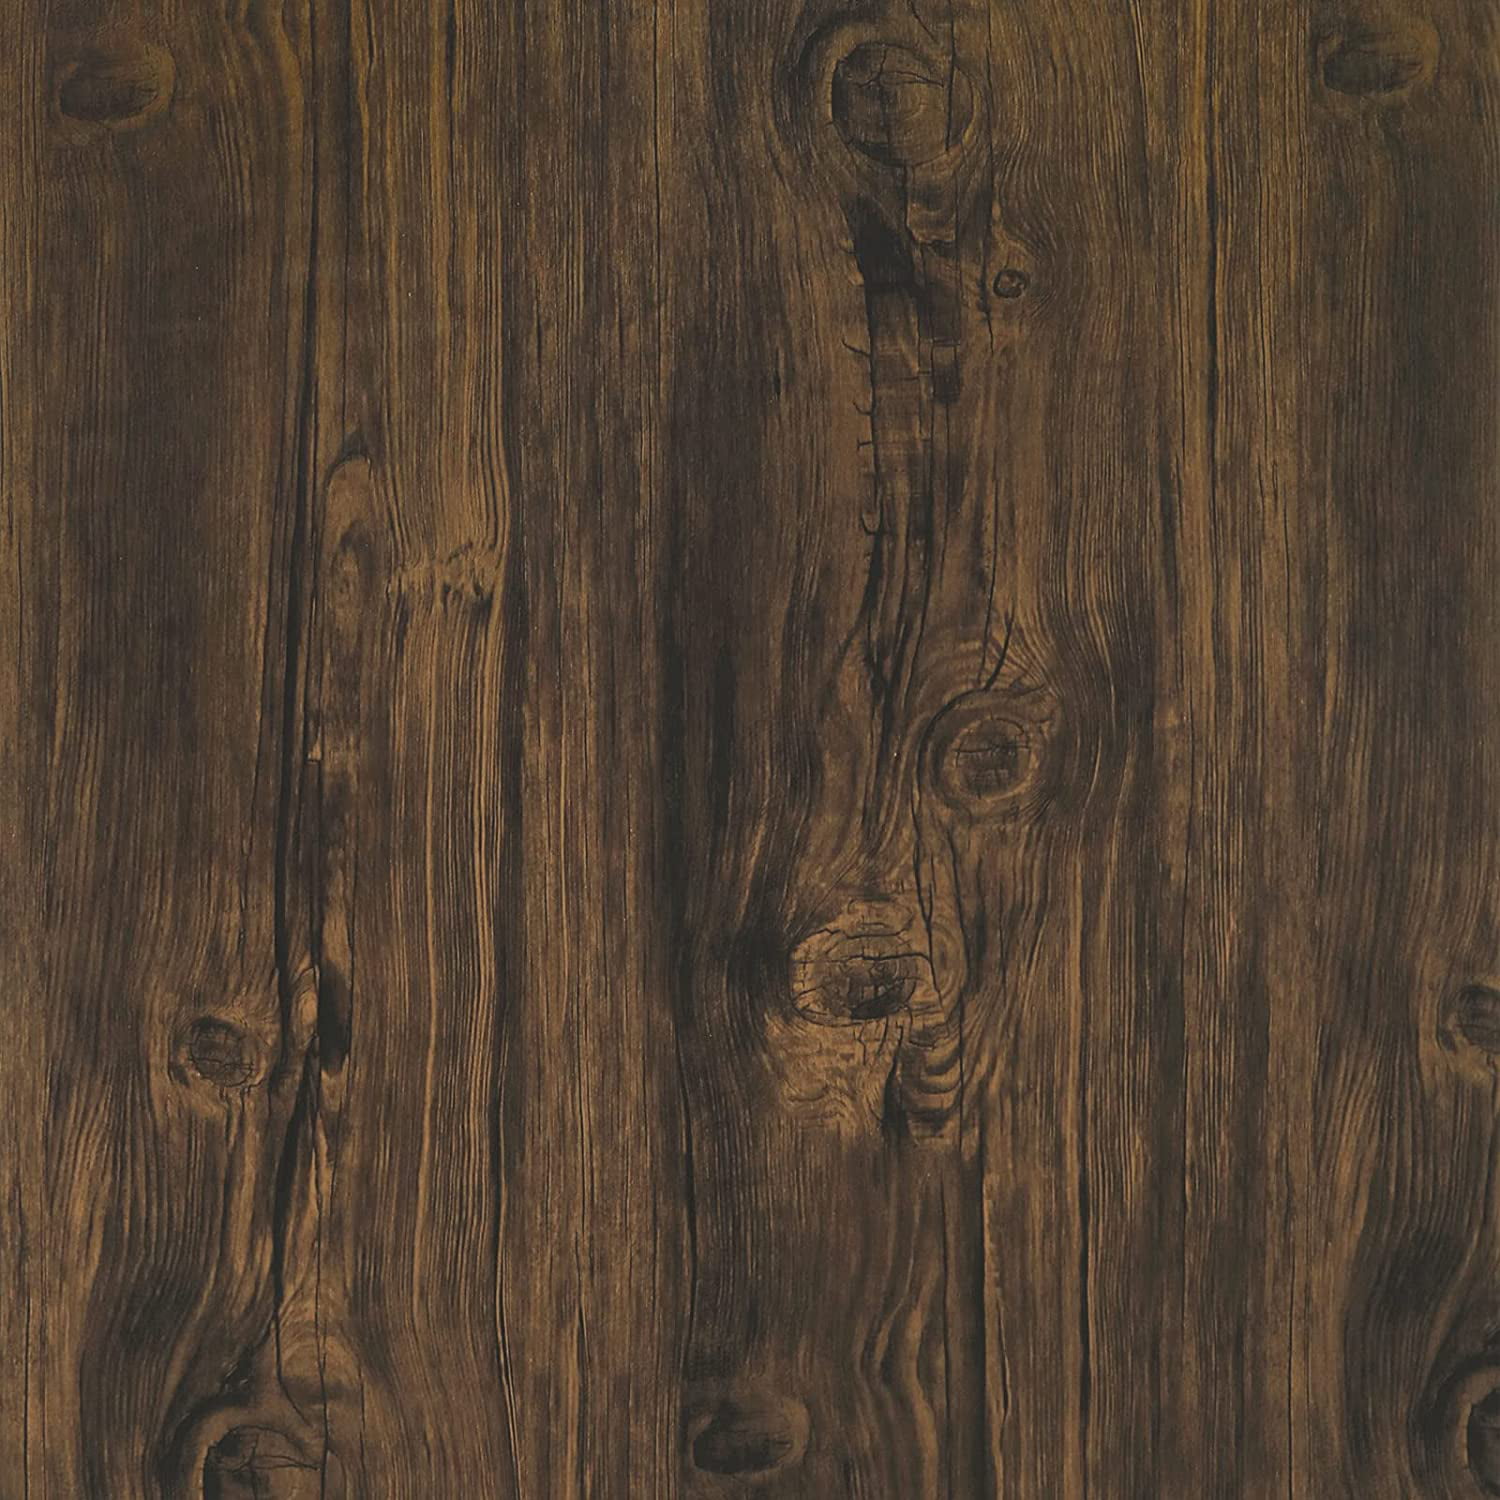 dark brown wood wallpaper